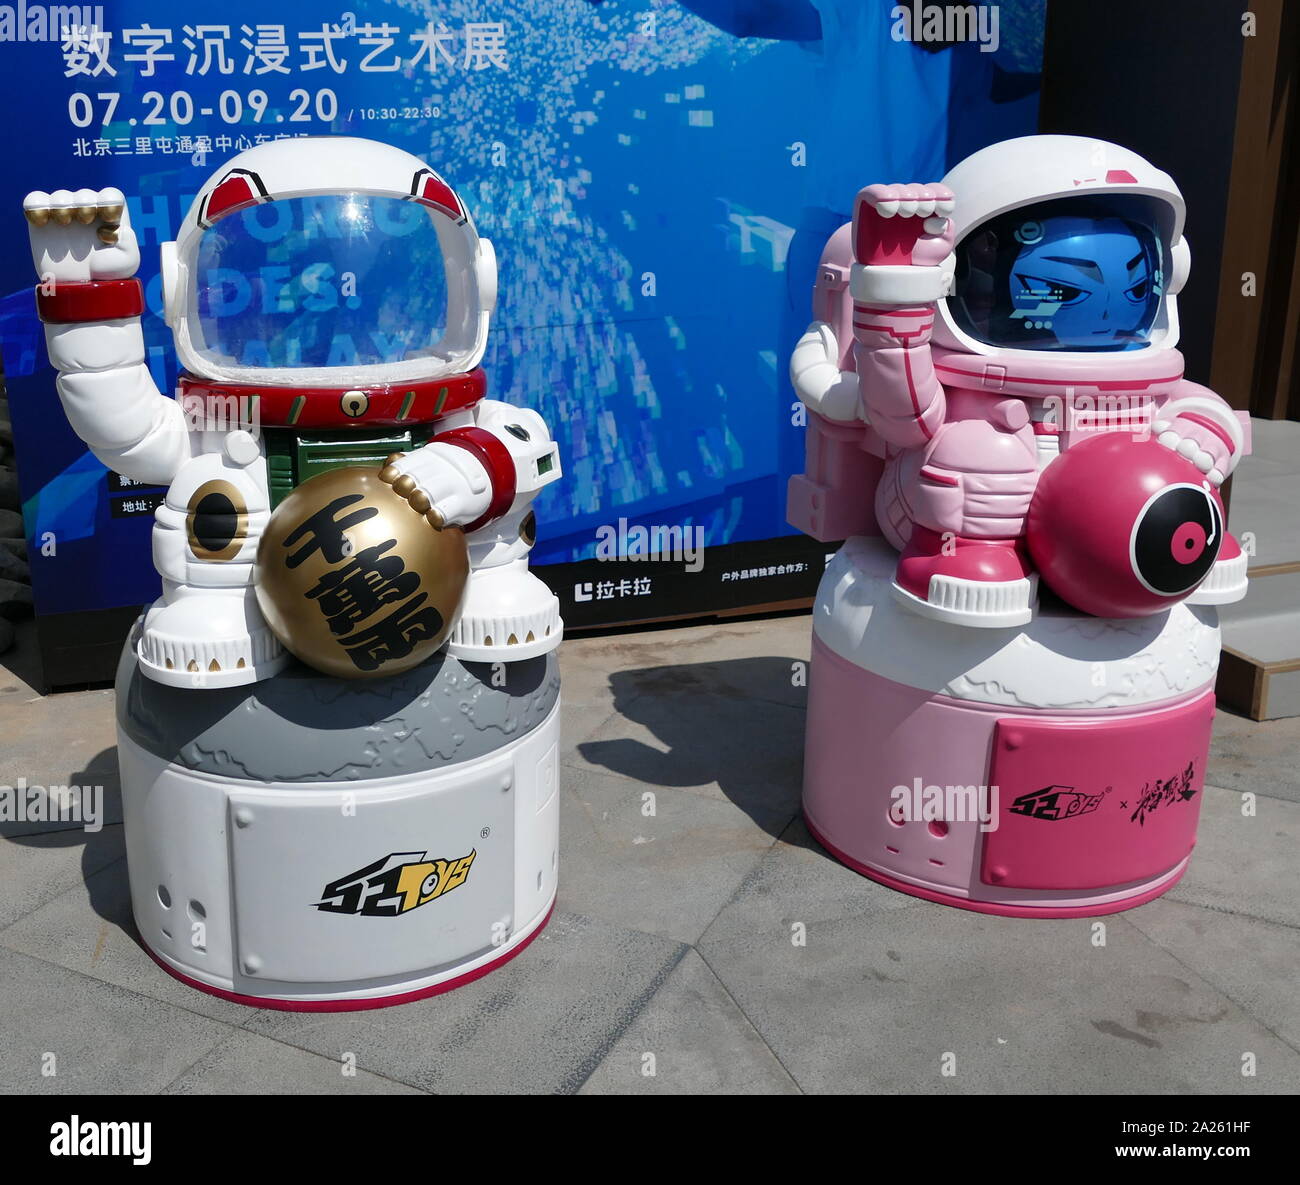 Les chiffres de l'astronaute bienvenue aux visiteurs de la "digital Beijing Art Immersive Exhibition' 2019 Banque D'Images